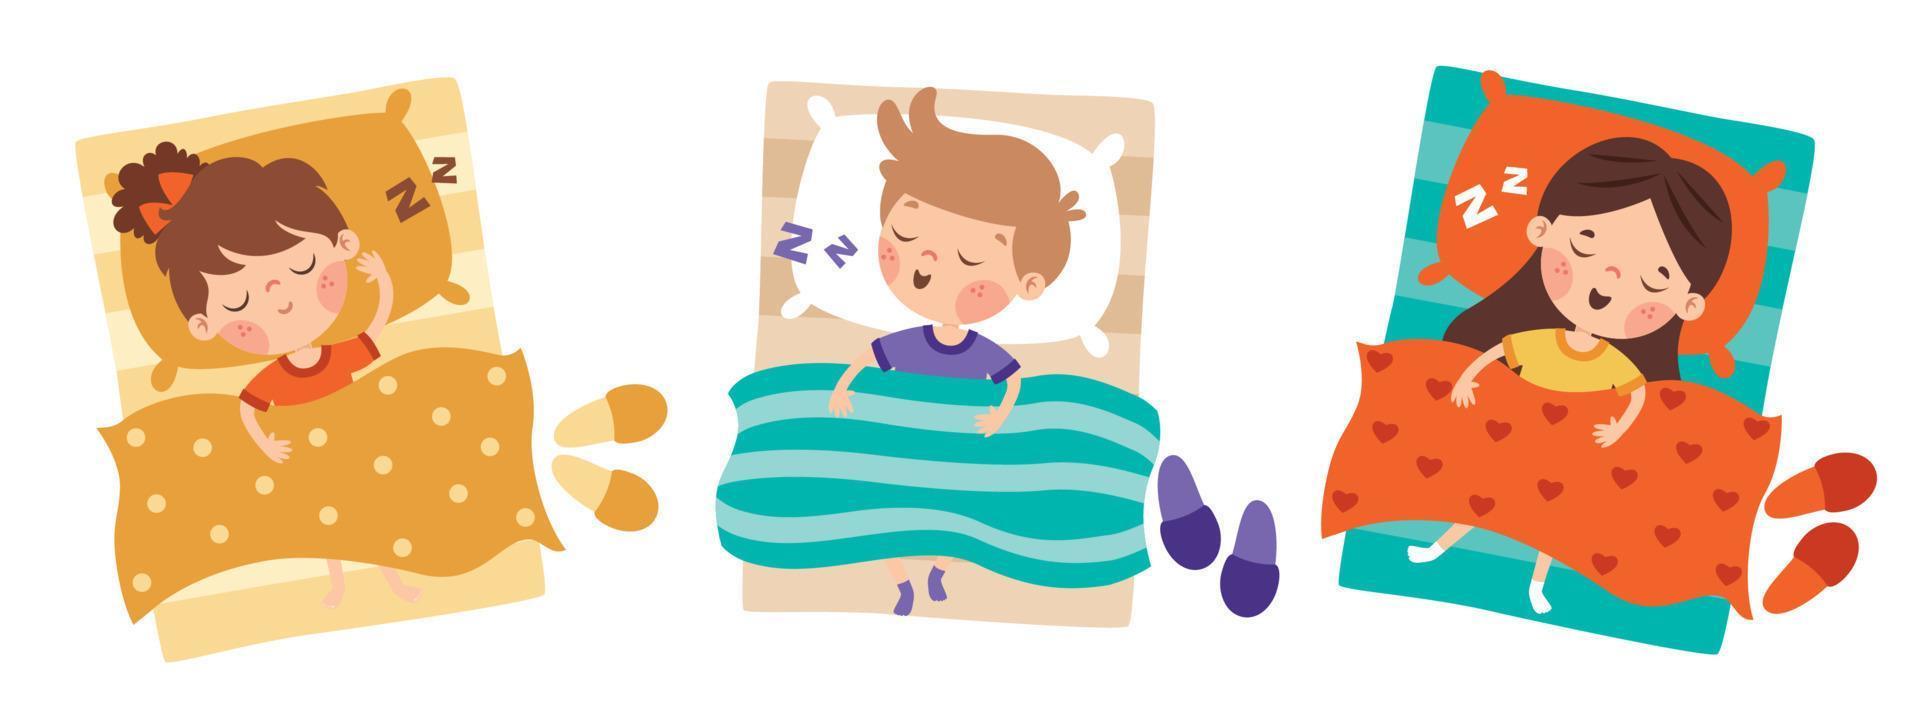 ilustração dos desenhos animados de crianças dormindo vetor